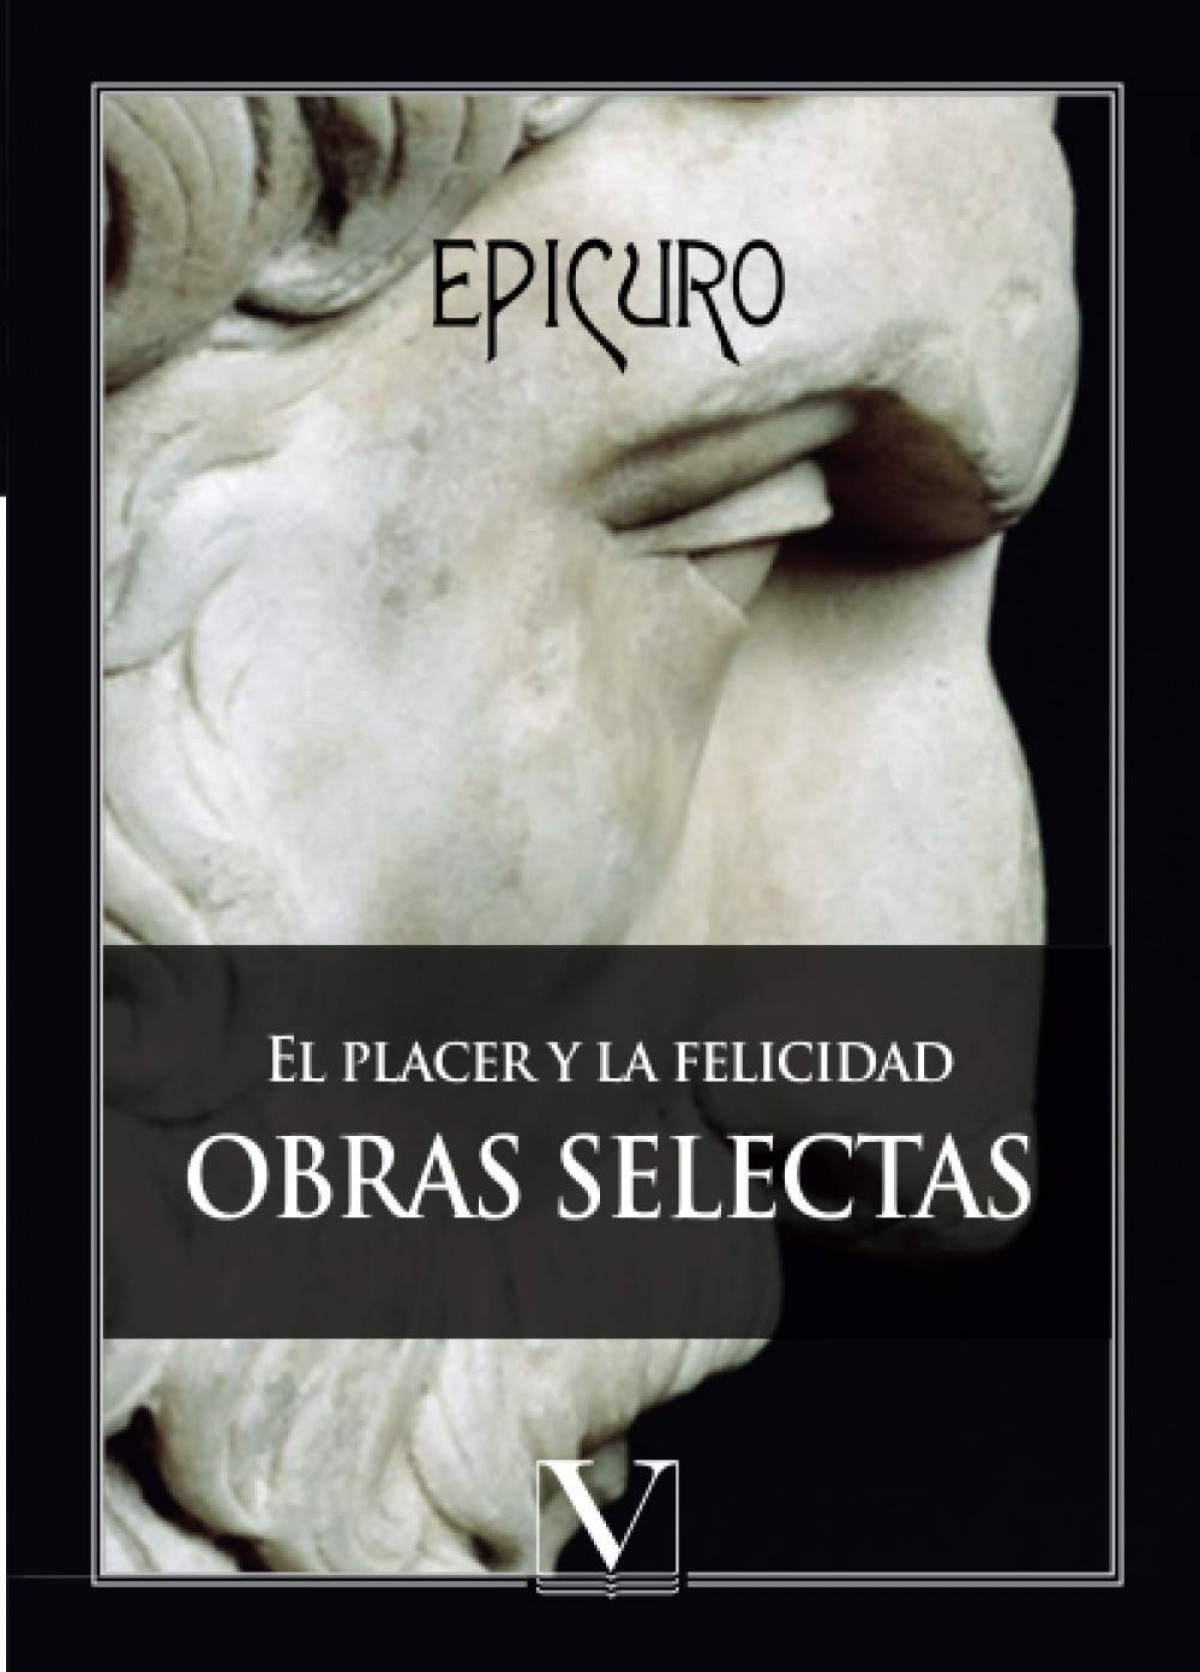 El placer y la felicidad Obras selectas - Epicuro,